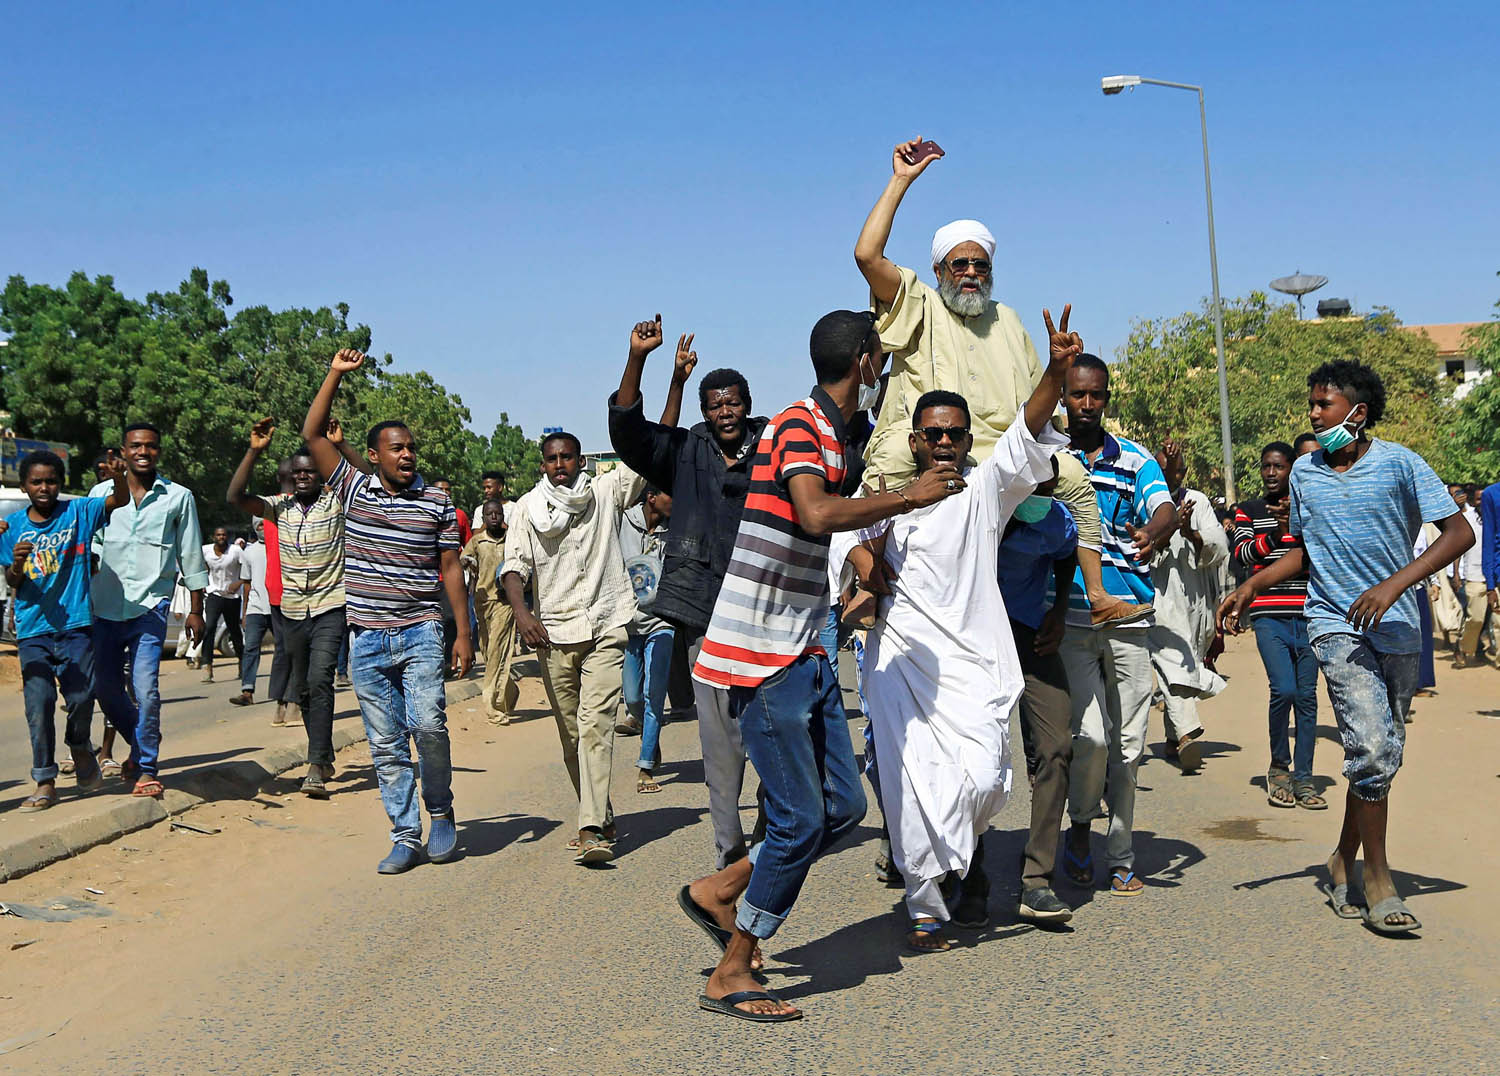 متظاهرون سودانيون في الخرطوم احتجاجا على سياسات البشير